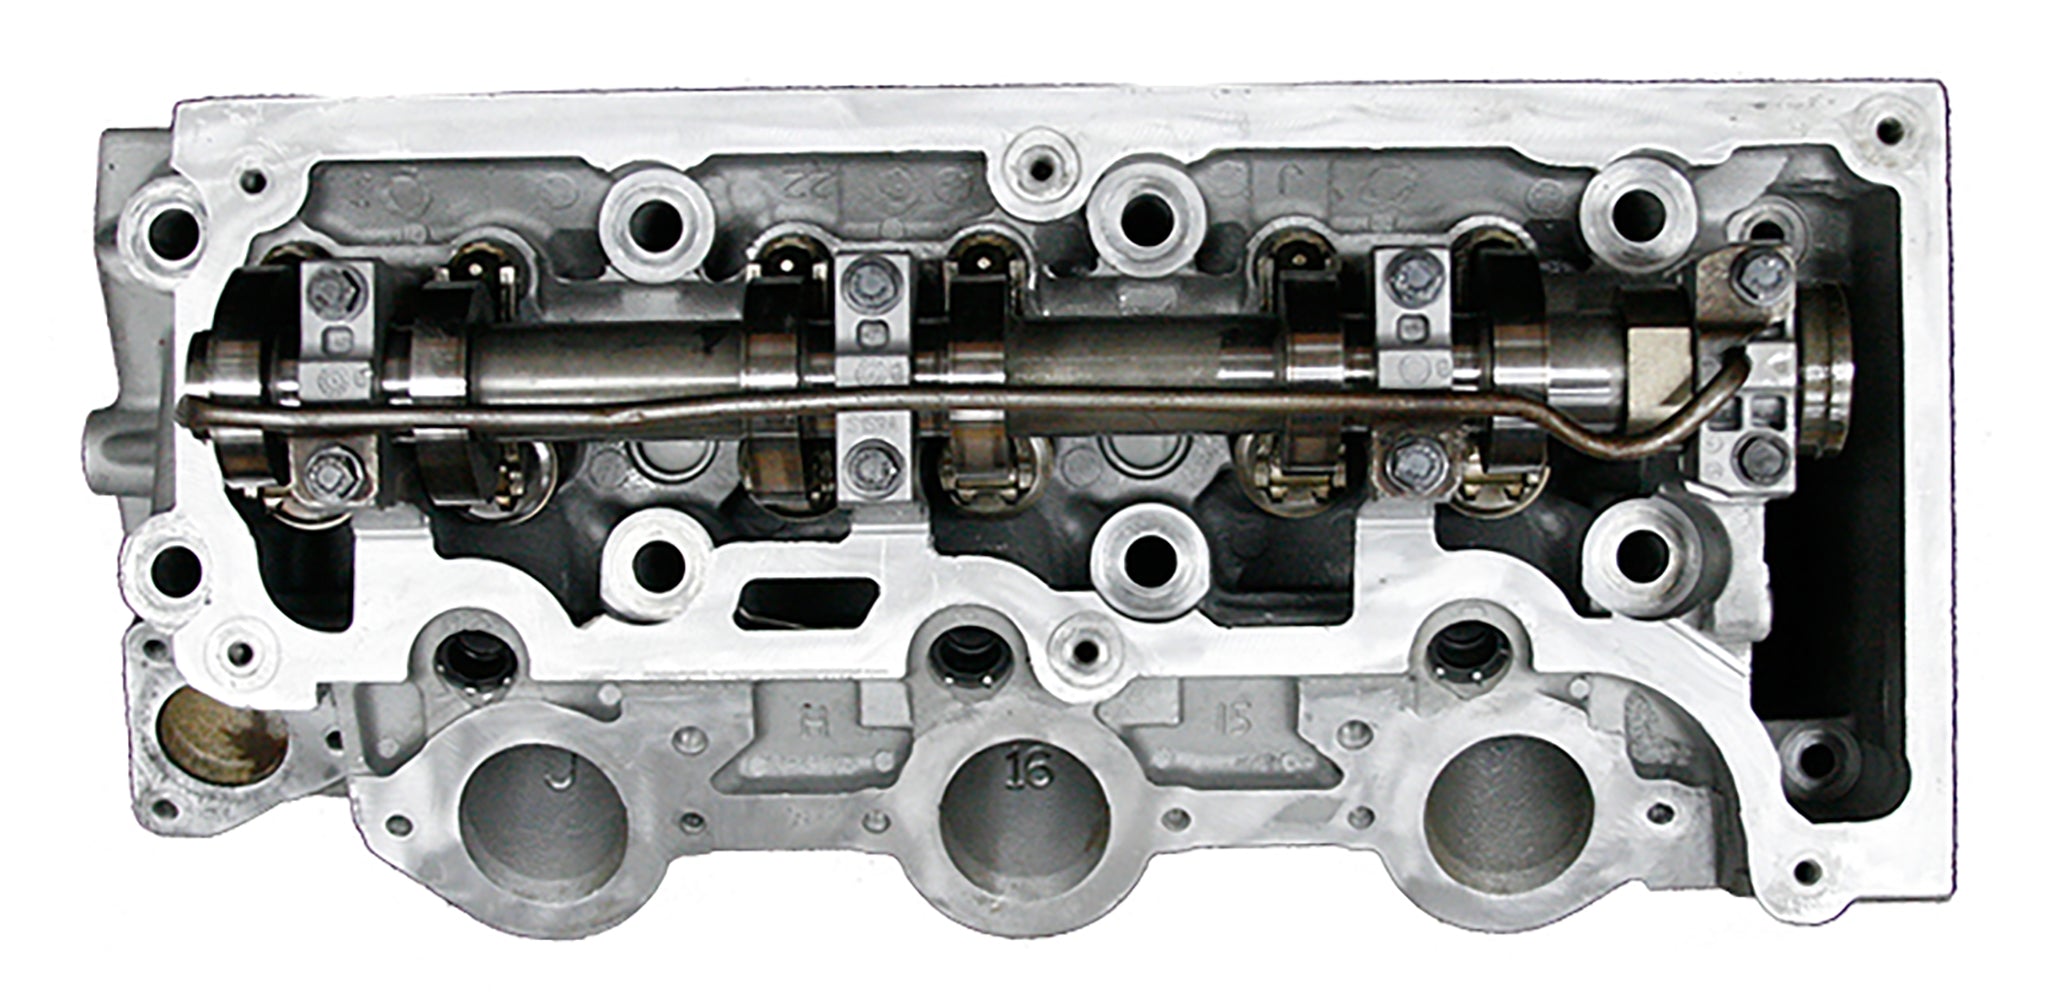 ATK Engines Remanufactured Cylinder Head for 2001-2011 Chrysler/Dodge/Jeep  with 3.3/3.8L V6